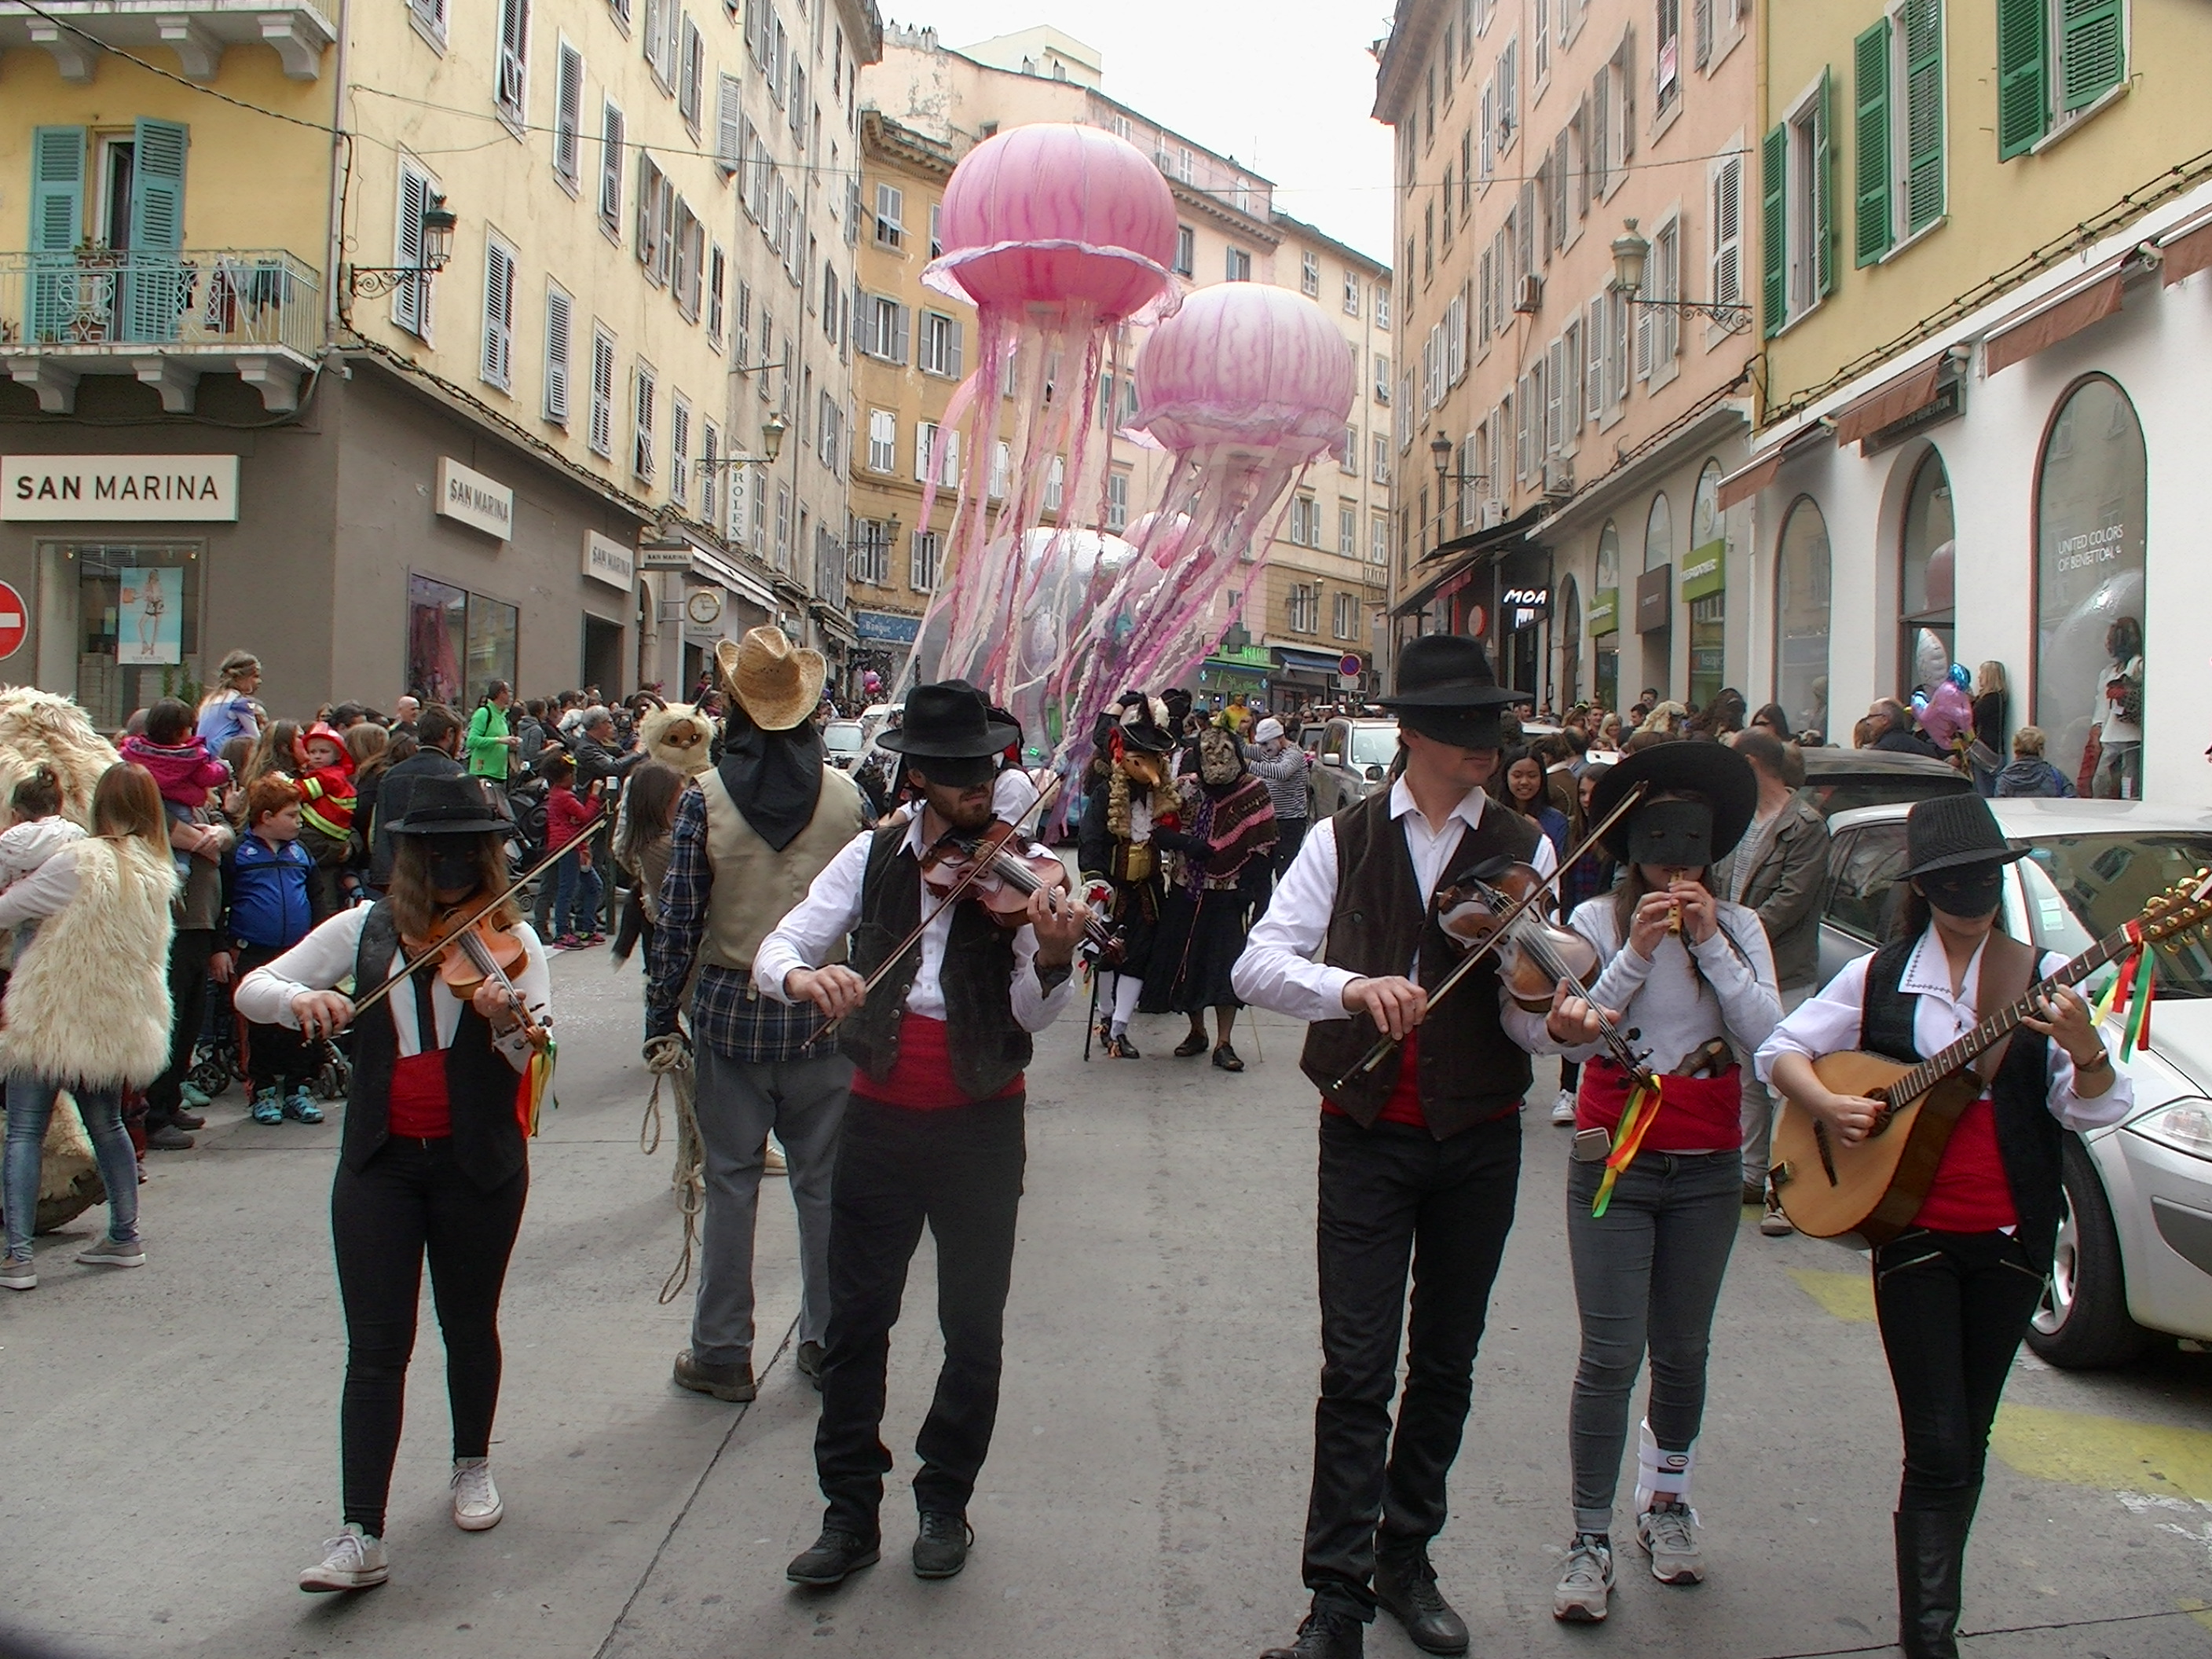 Carnaval de Bastia : Jour de folie sur le boulevard Paoli